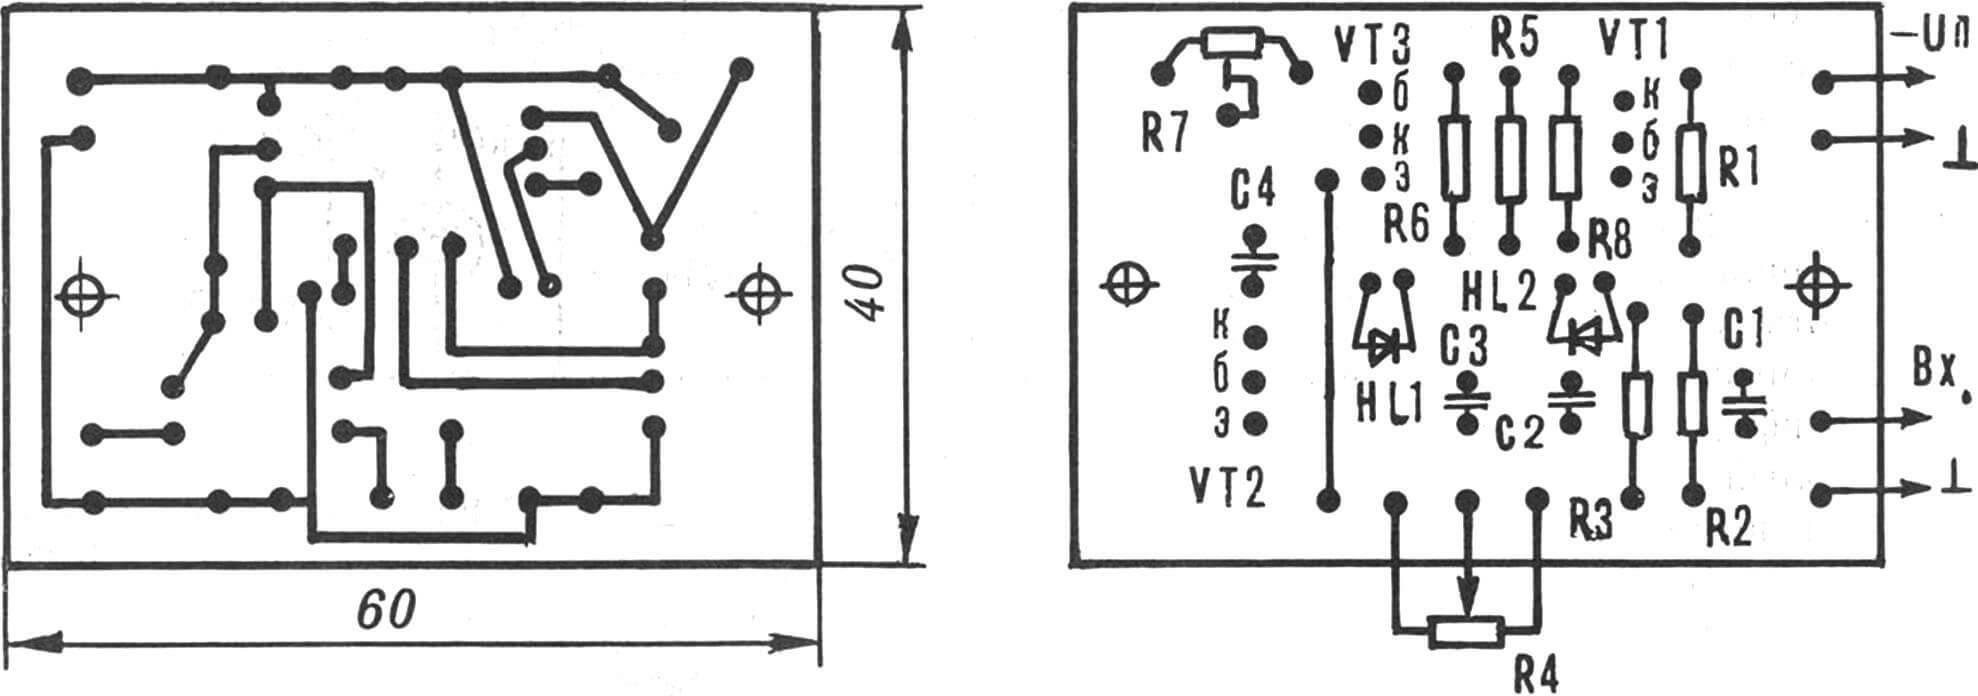 Рис. 4. Монтажная плата передатчика со схемой расположения элементов.